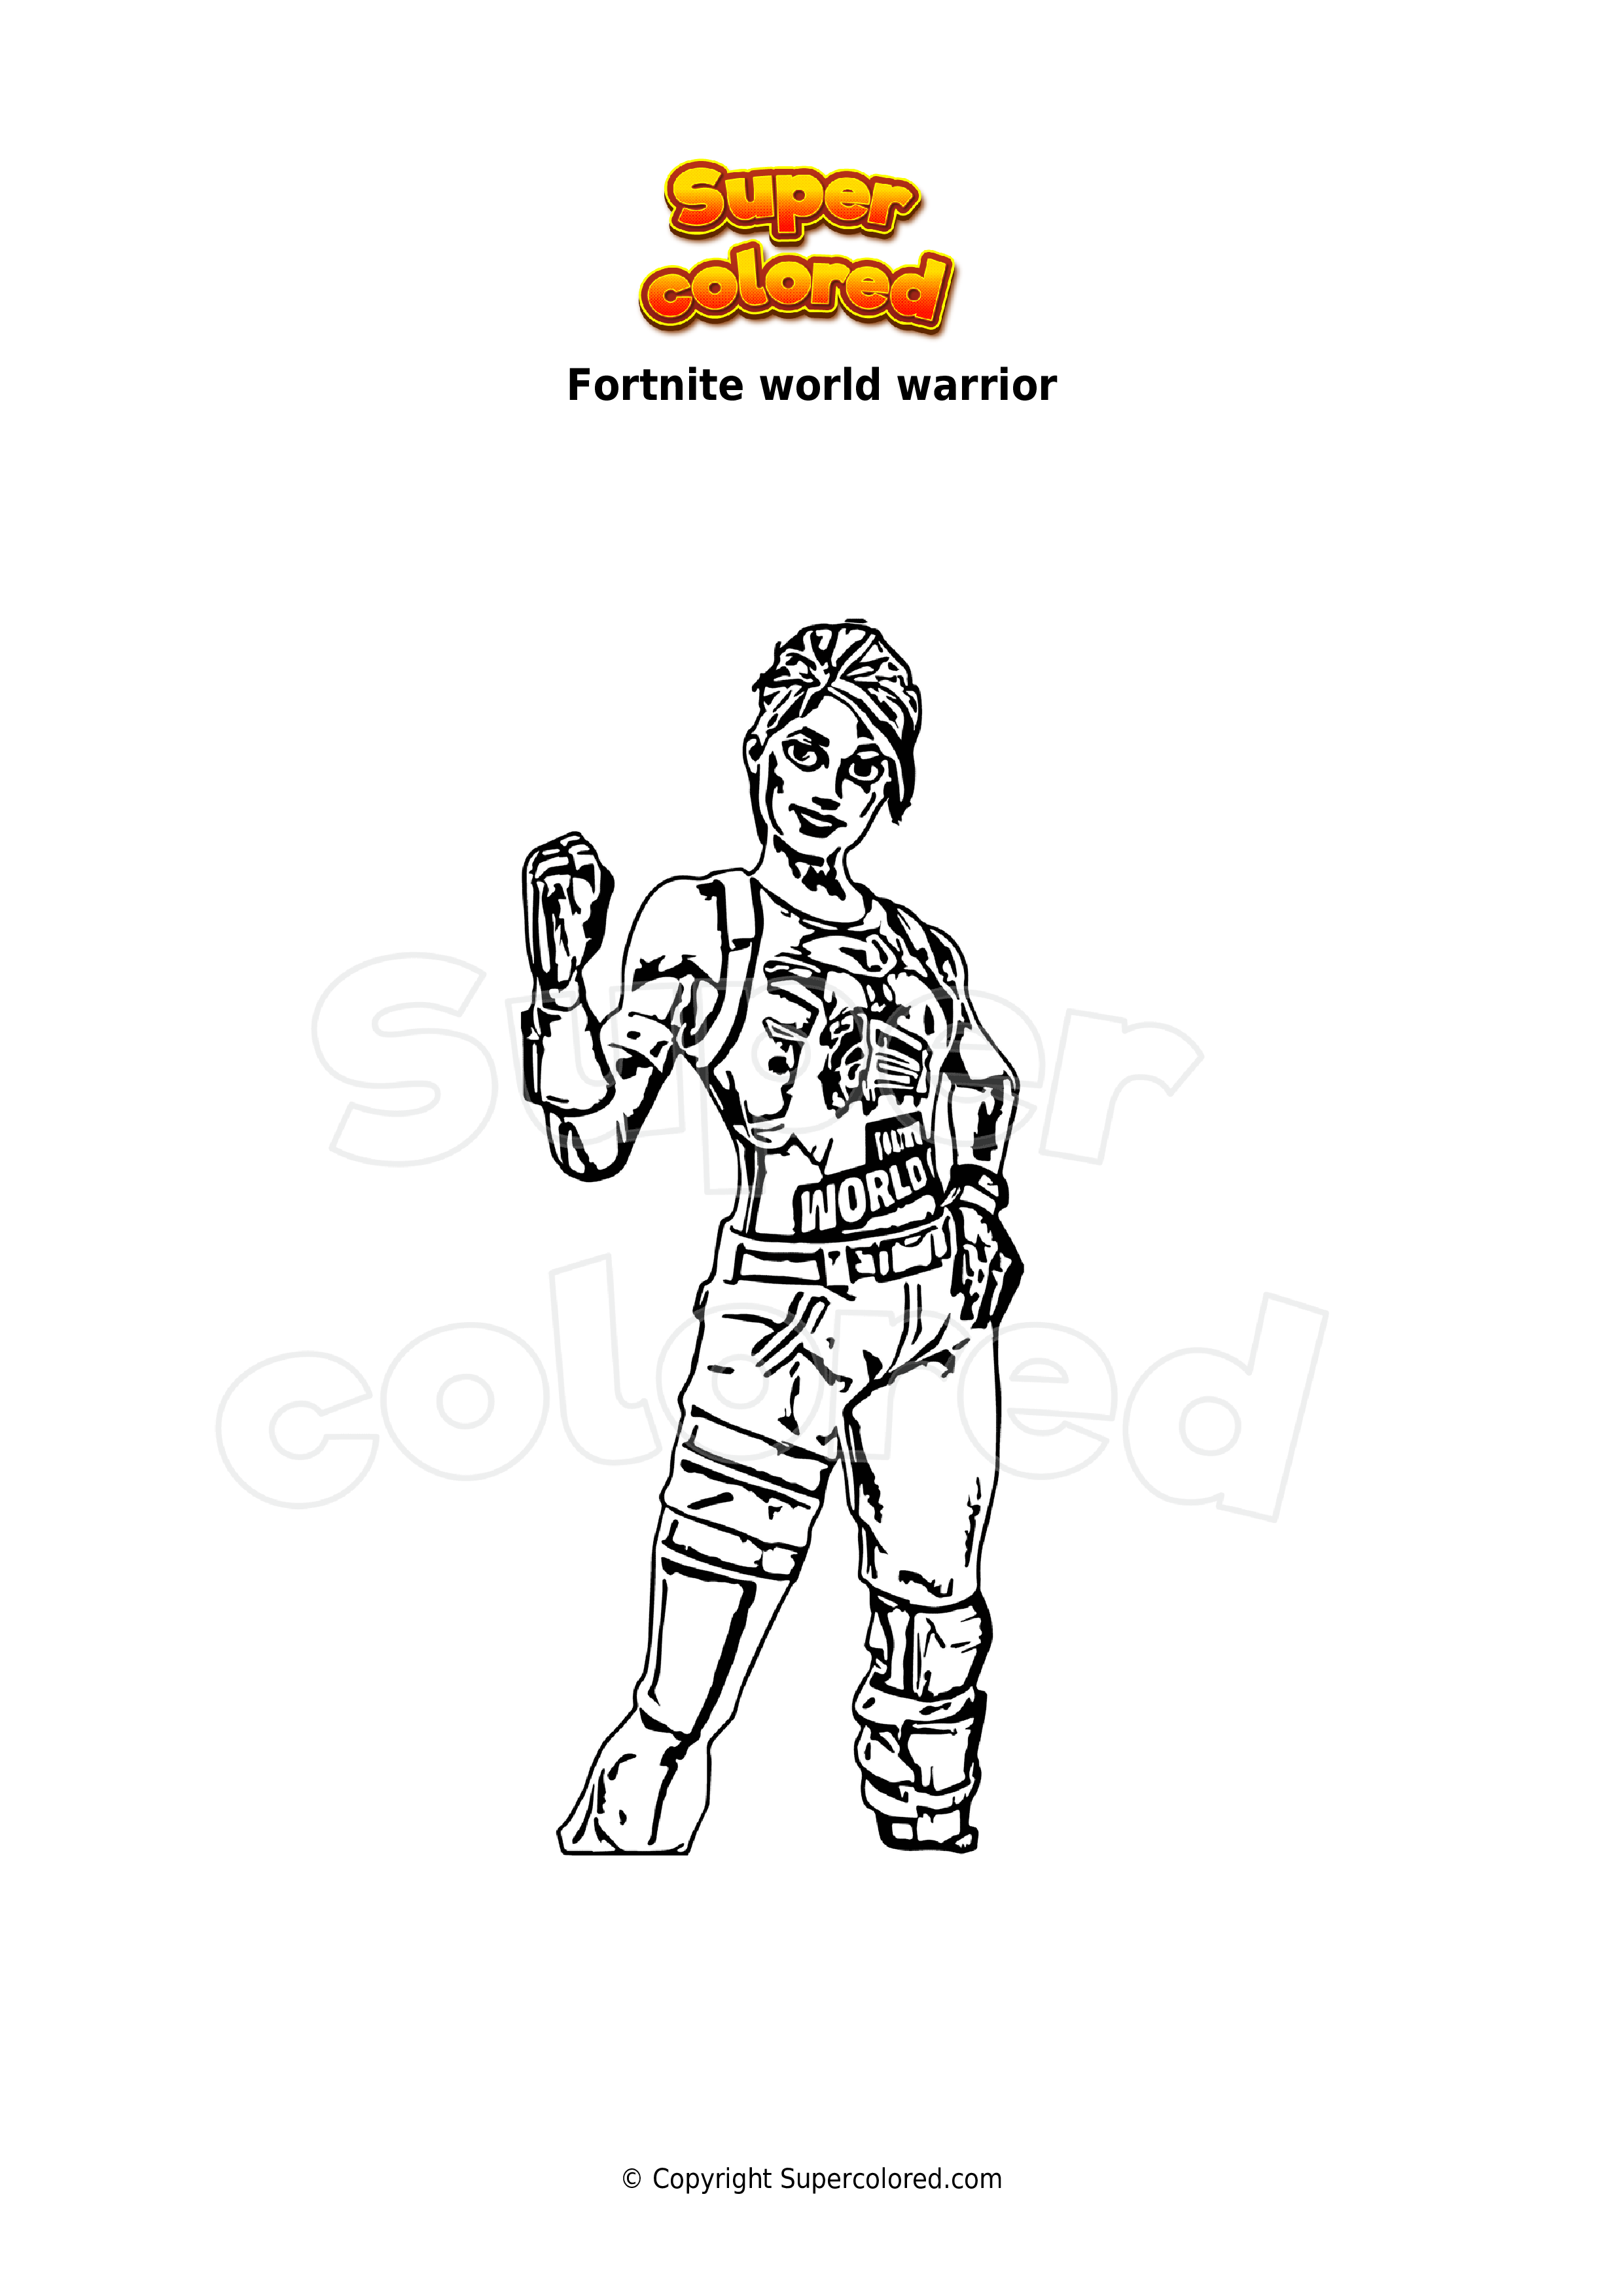 coloriage-fortnite-world-warrior-supercolored